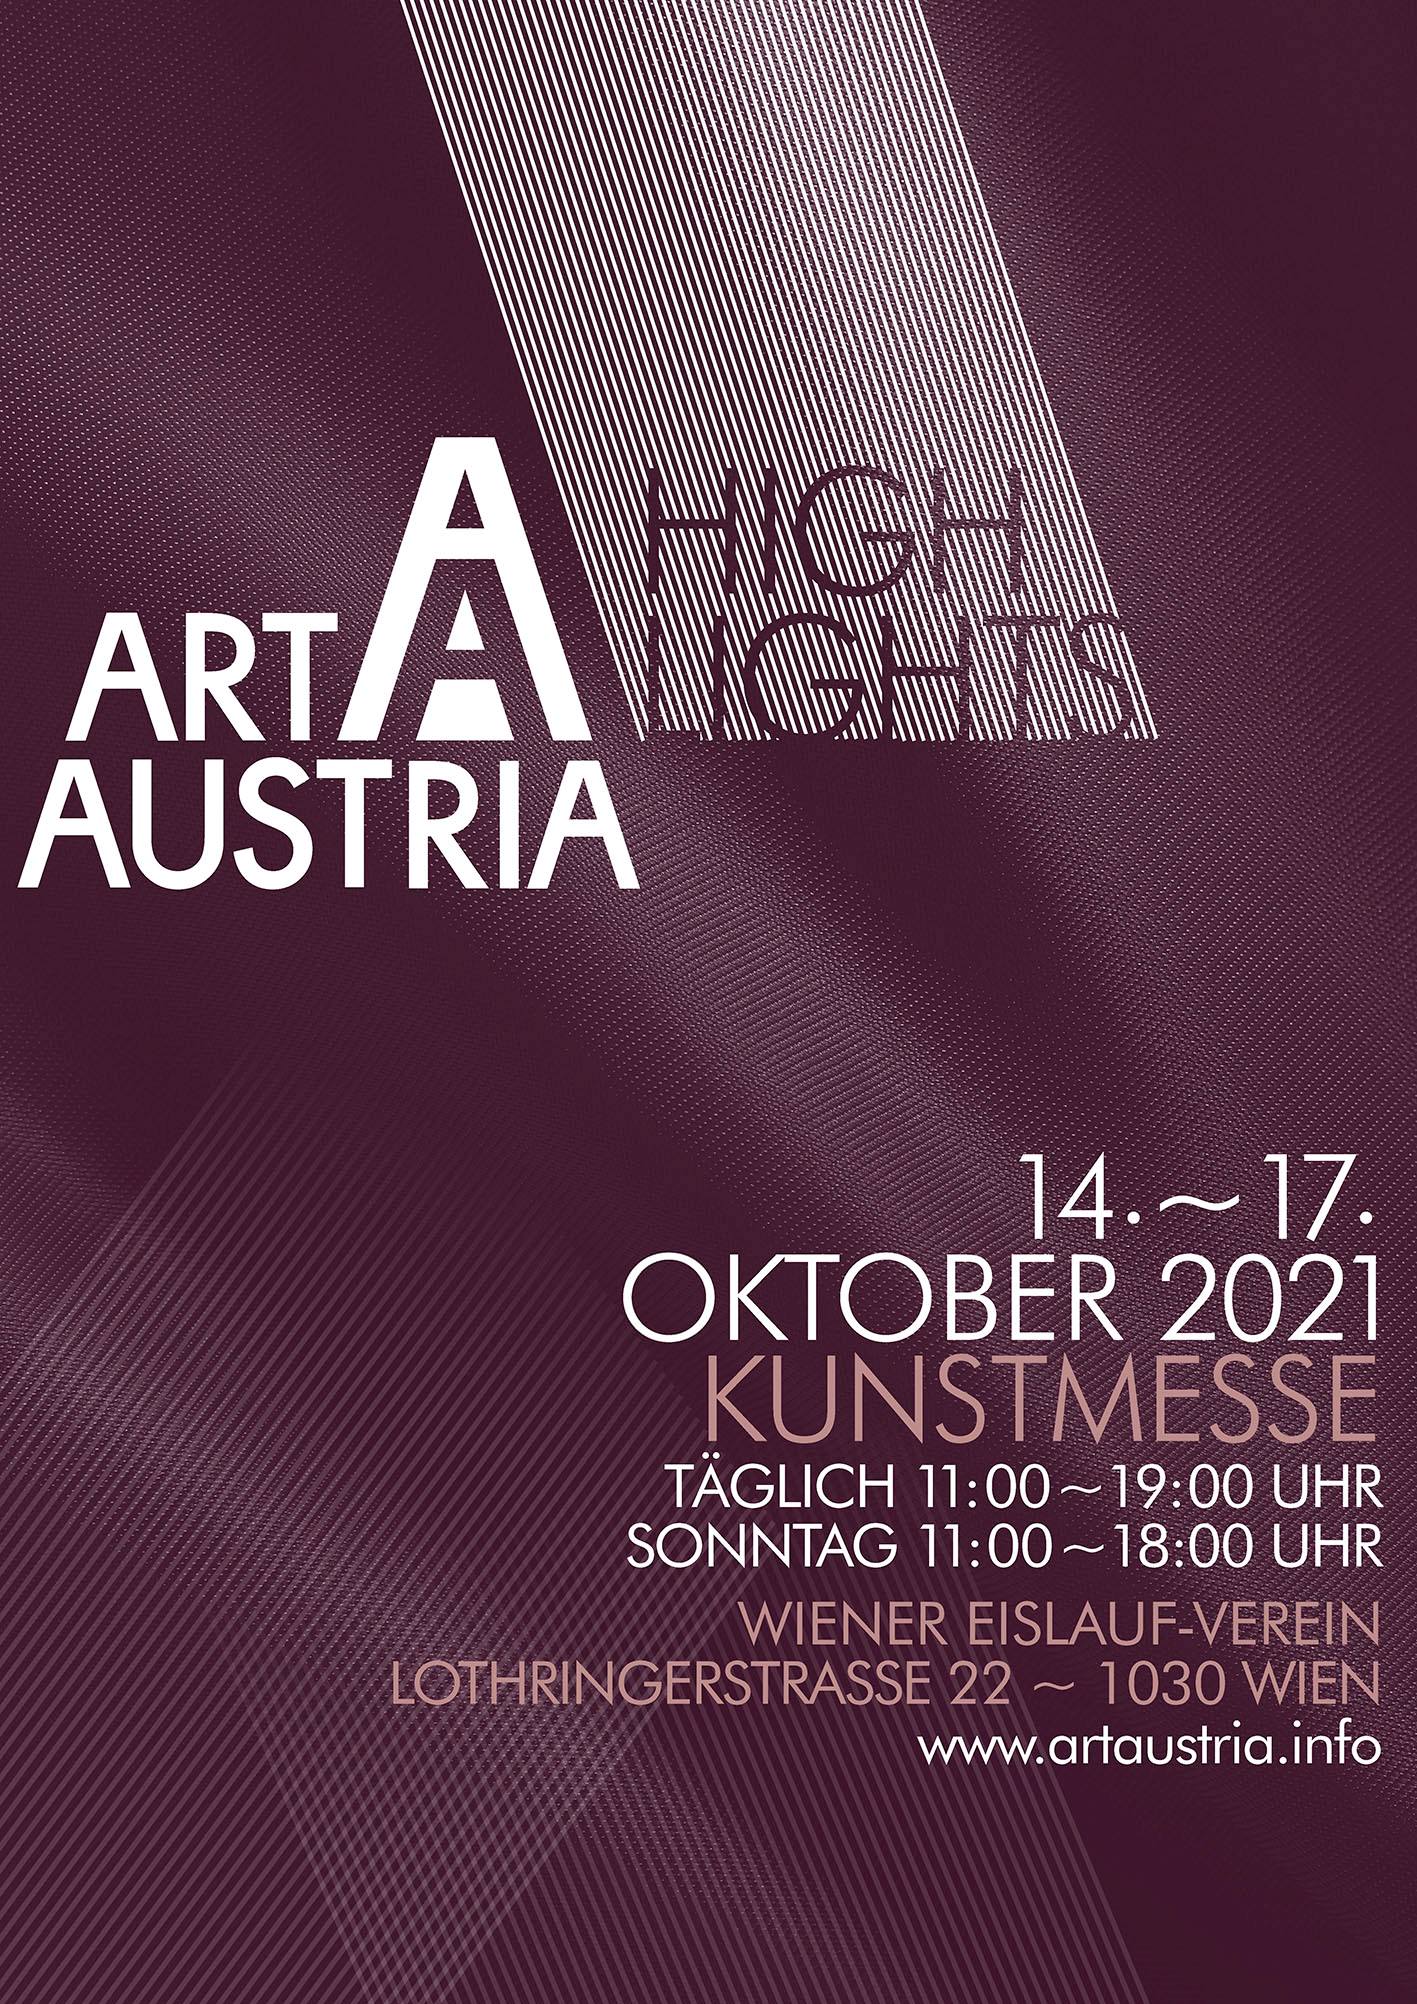 © Art Austria Highlights 2021 Kunstmesse an einer Sensations-Location